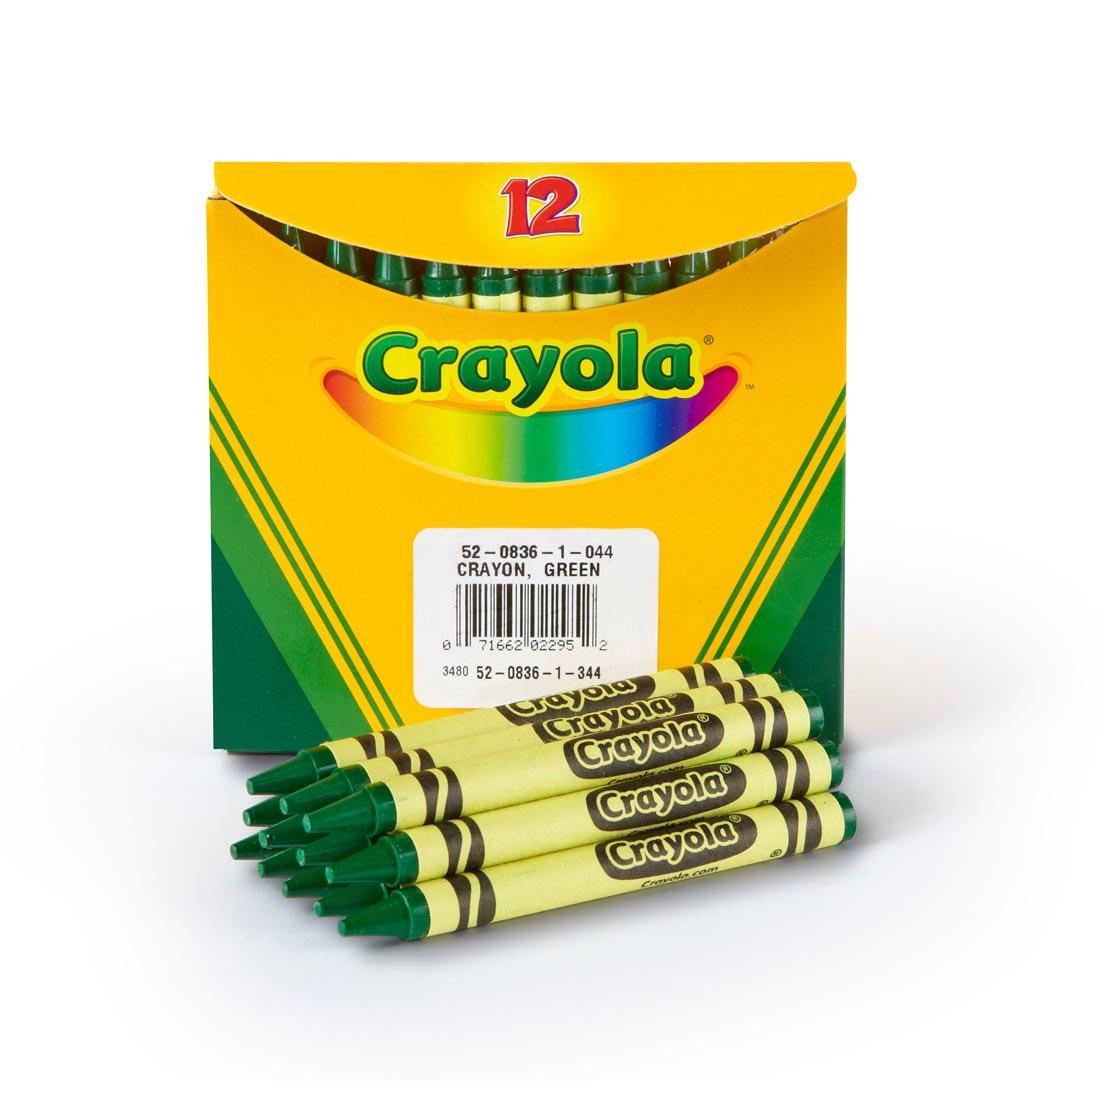 Box of Crayola Regular Crayon Refills with 12 Green Crayons